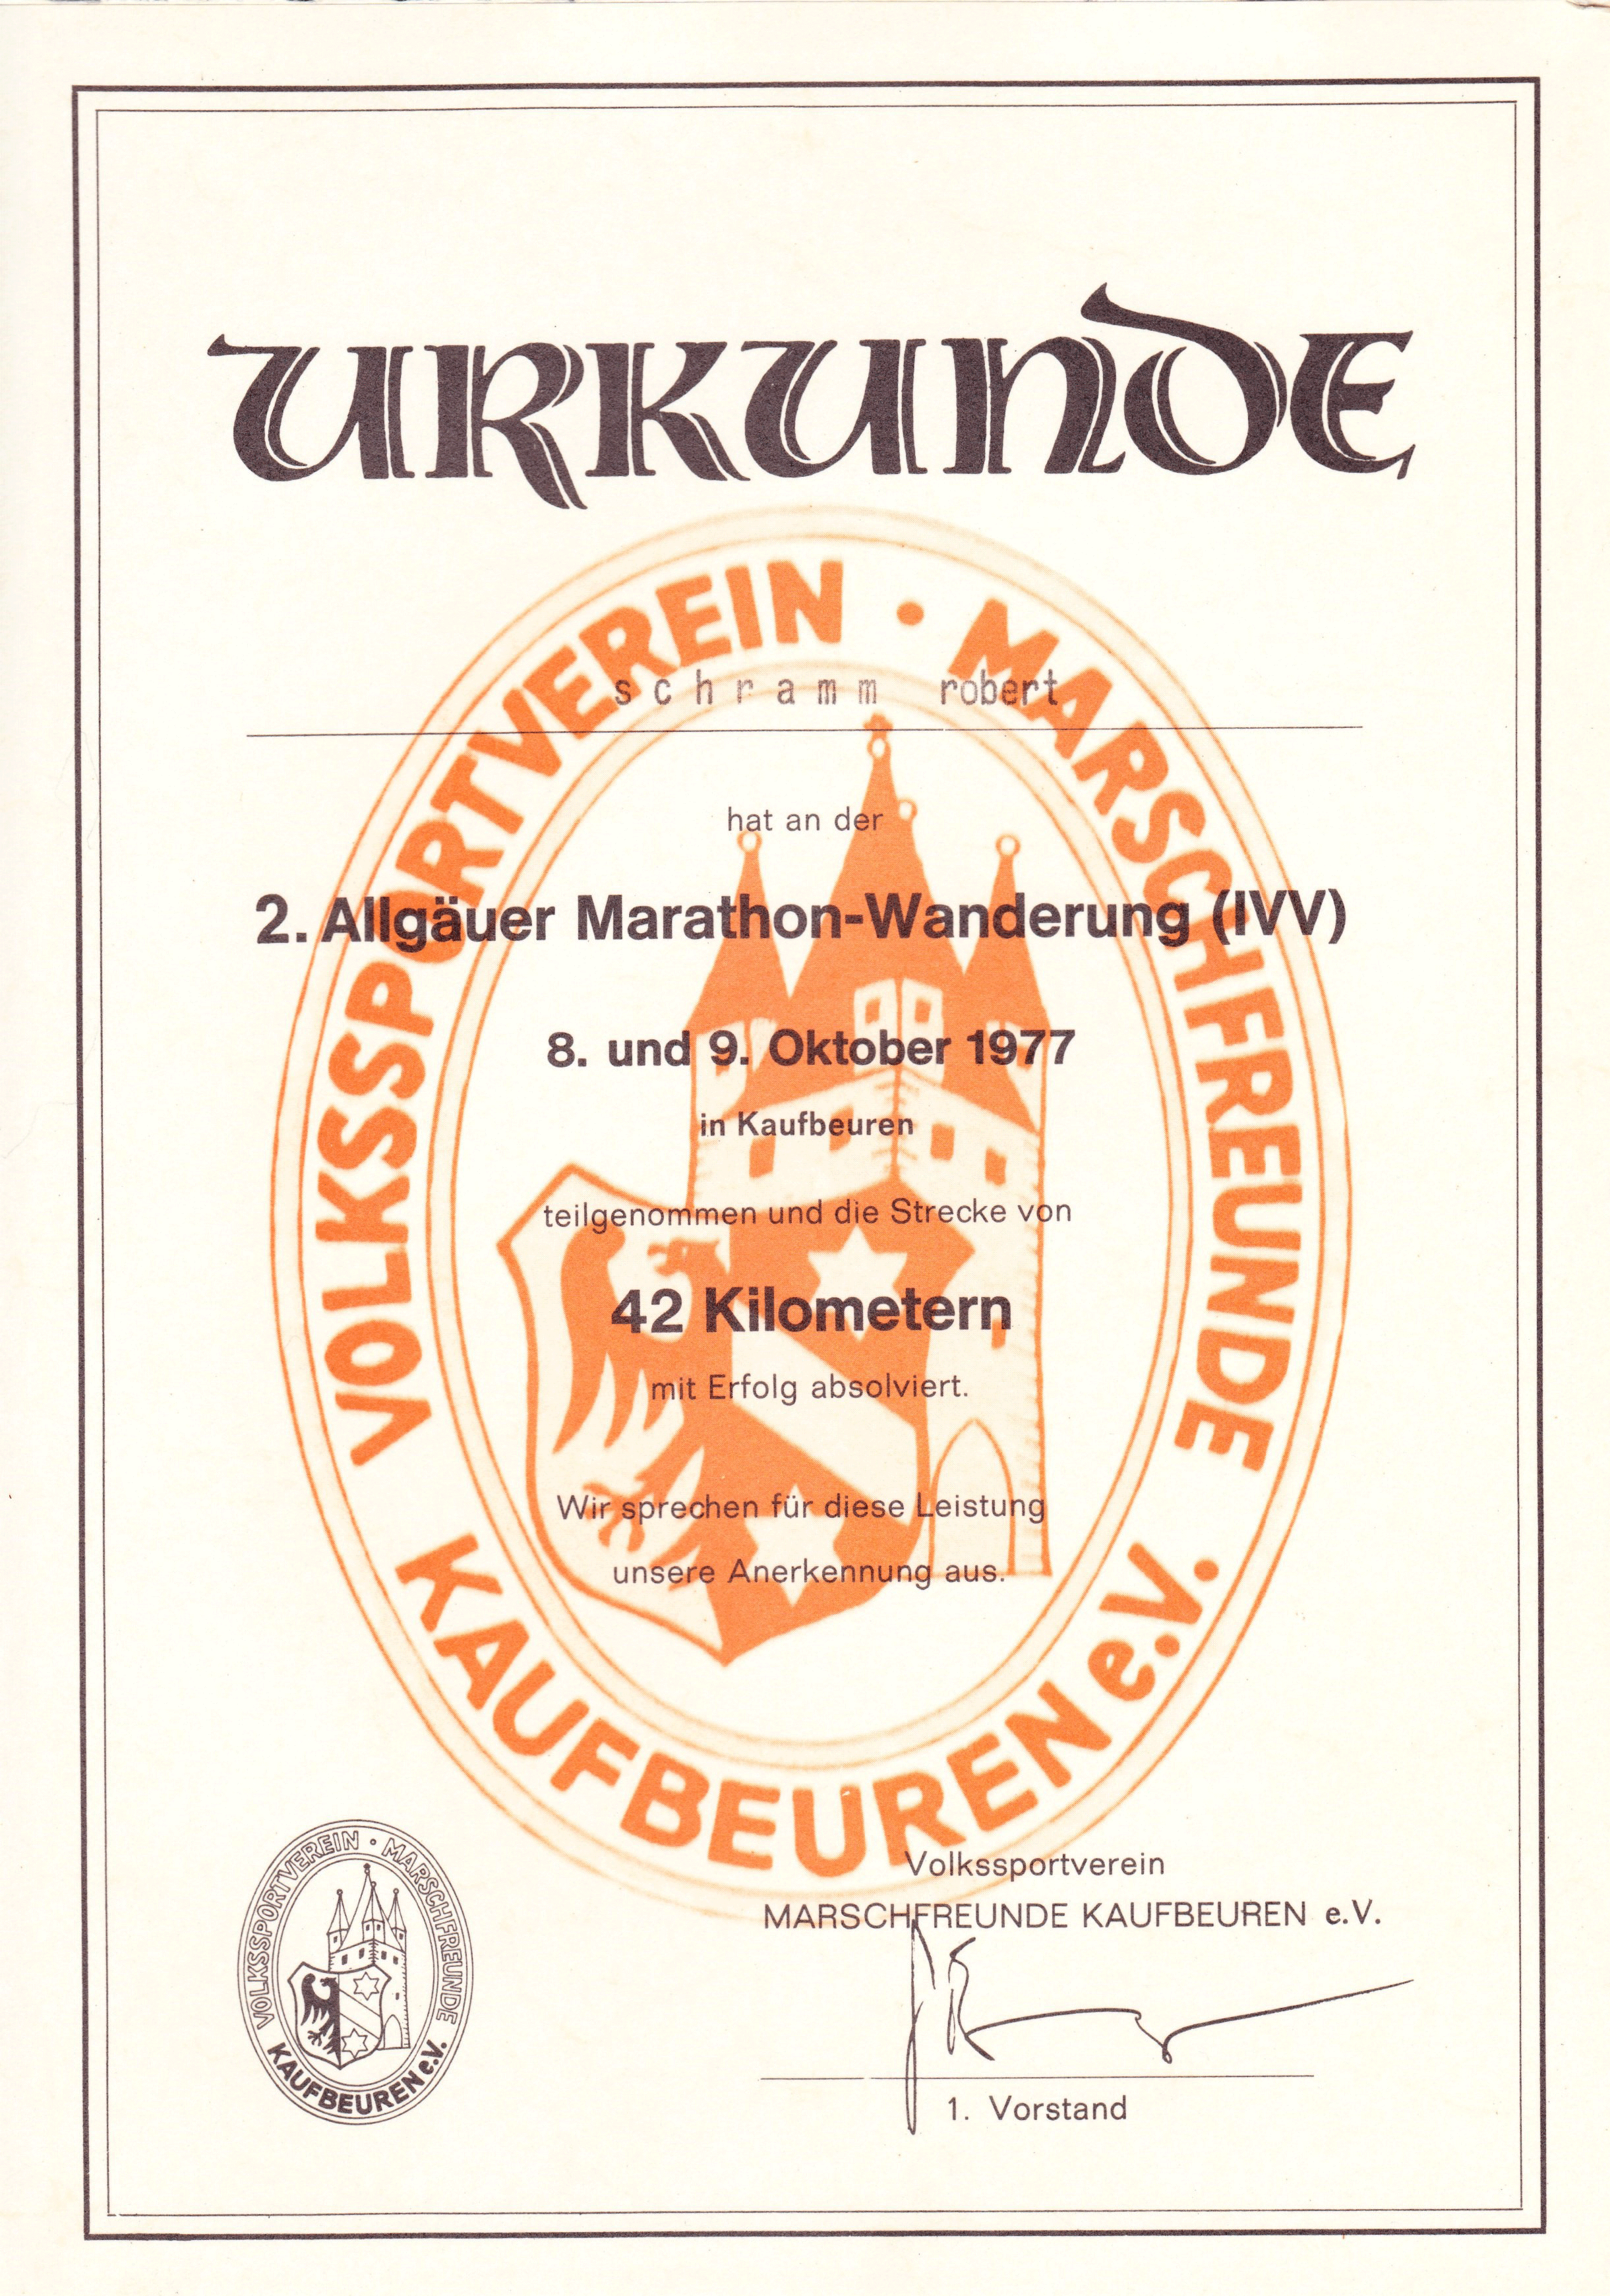 Urkunde-Kaufbeuren-1977